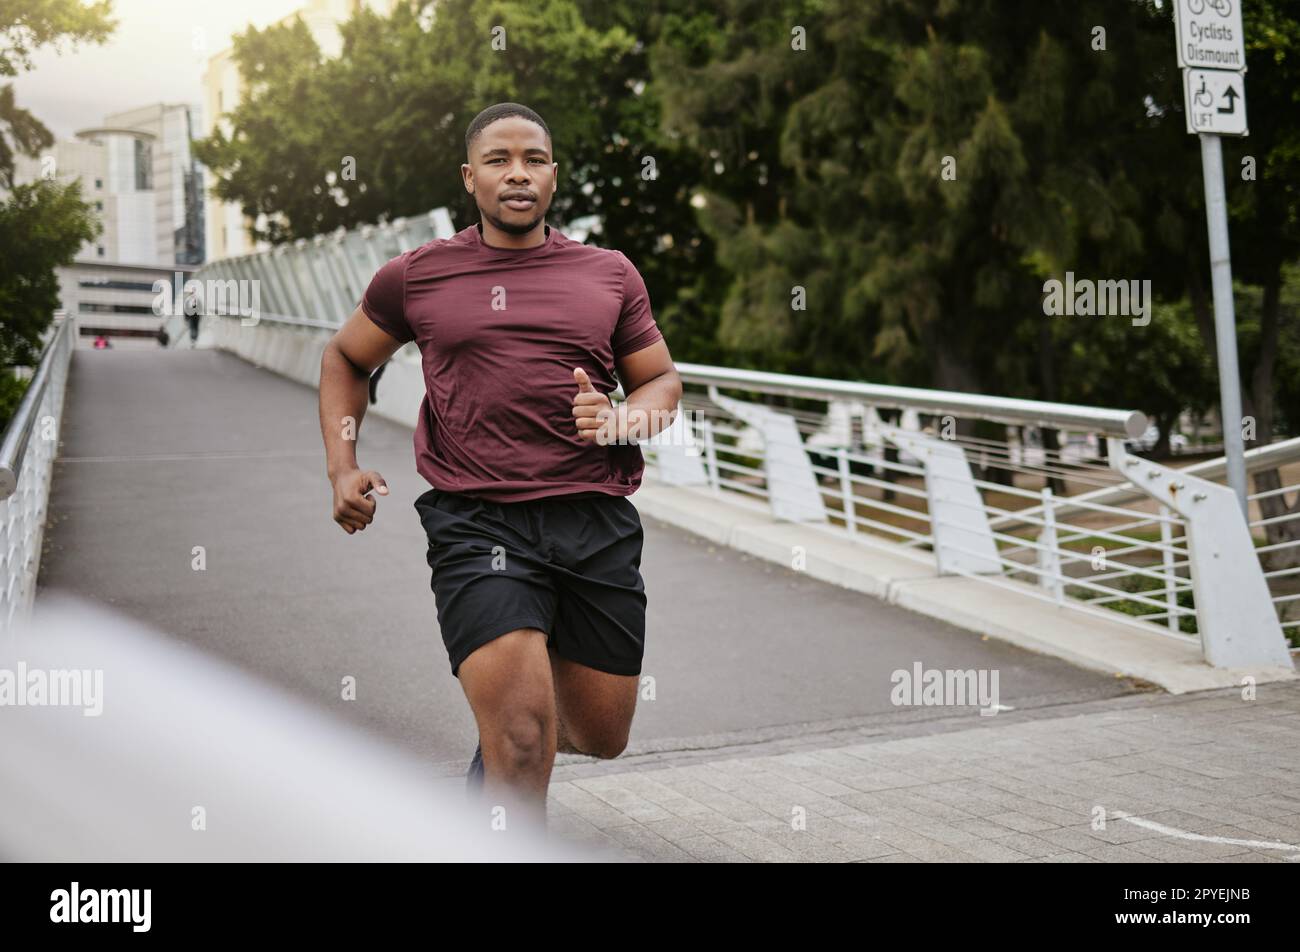 Laufen, Fitness und schwarzer Mann auf einer Brücke oder in der Stadt für körperliches Workout, Kardio-Ziele und Marathontraining mit Geschwindigkeit, Energie und Konzentration. Porträt eines Sportläufers auf der straße der usa für ein schnelles Training Stockfoto